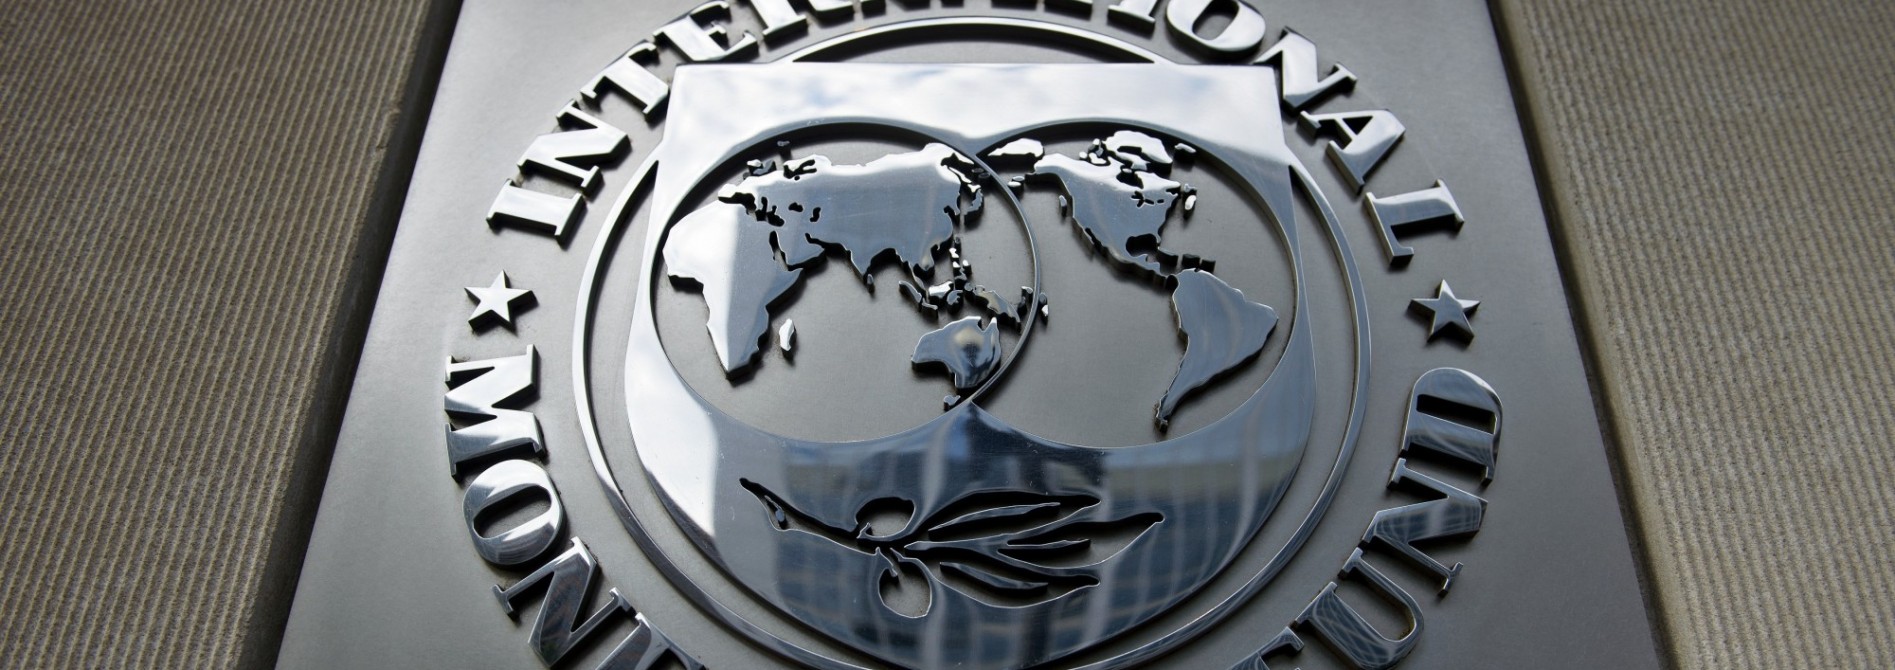 Andorra ingresará en el Fondo Monetario Internacional